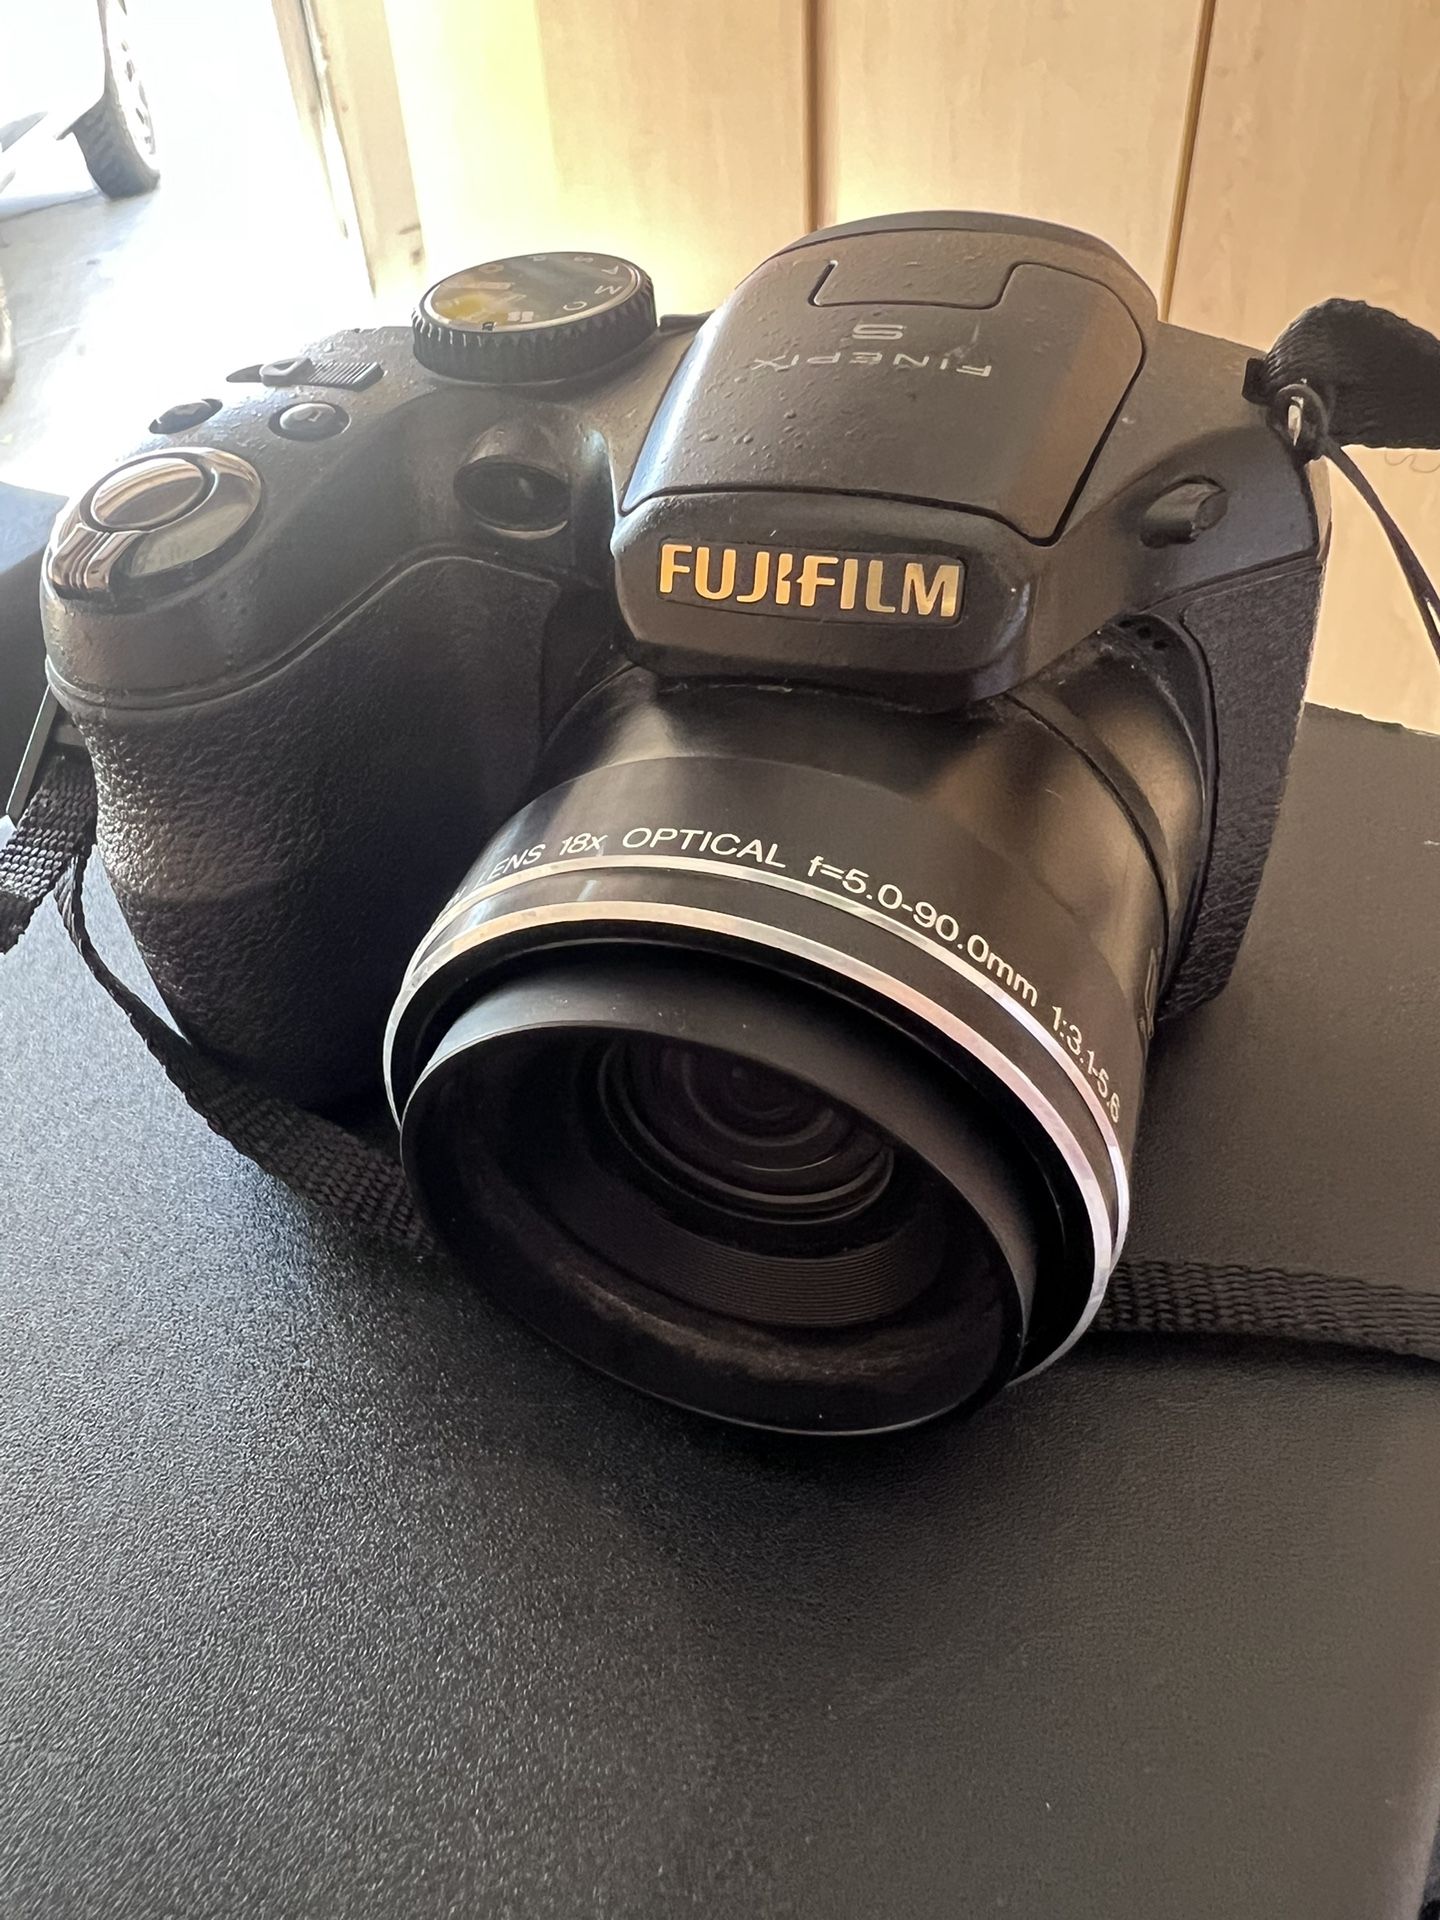 FUJIFILM Digital Camera S2800HD w/sd Card & New Batteries $80 OBO